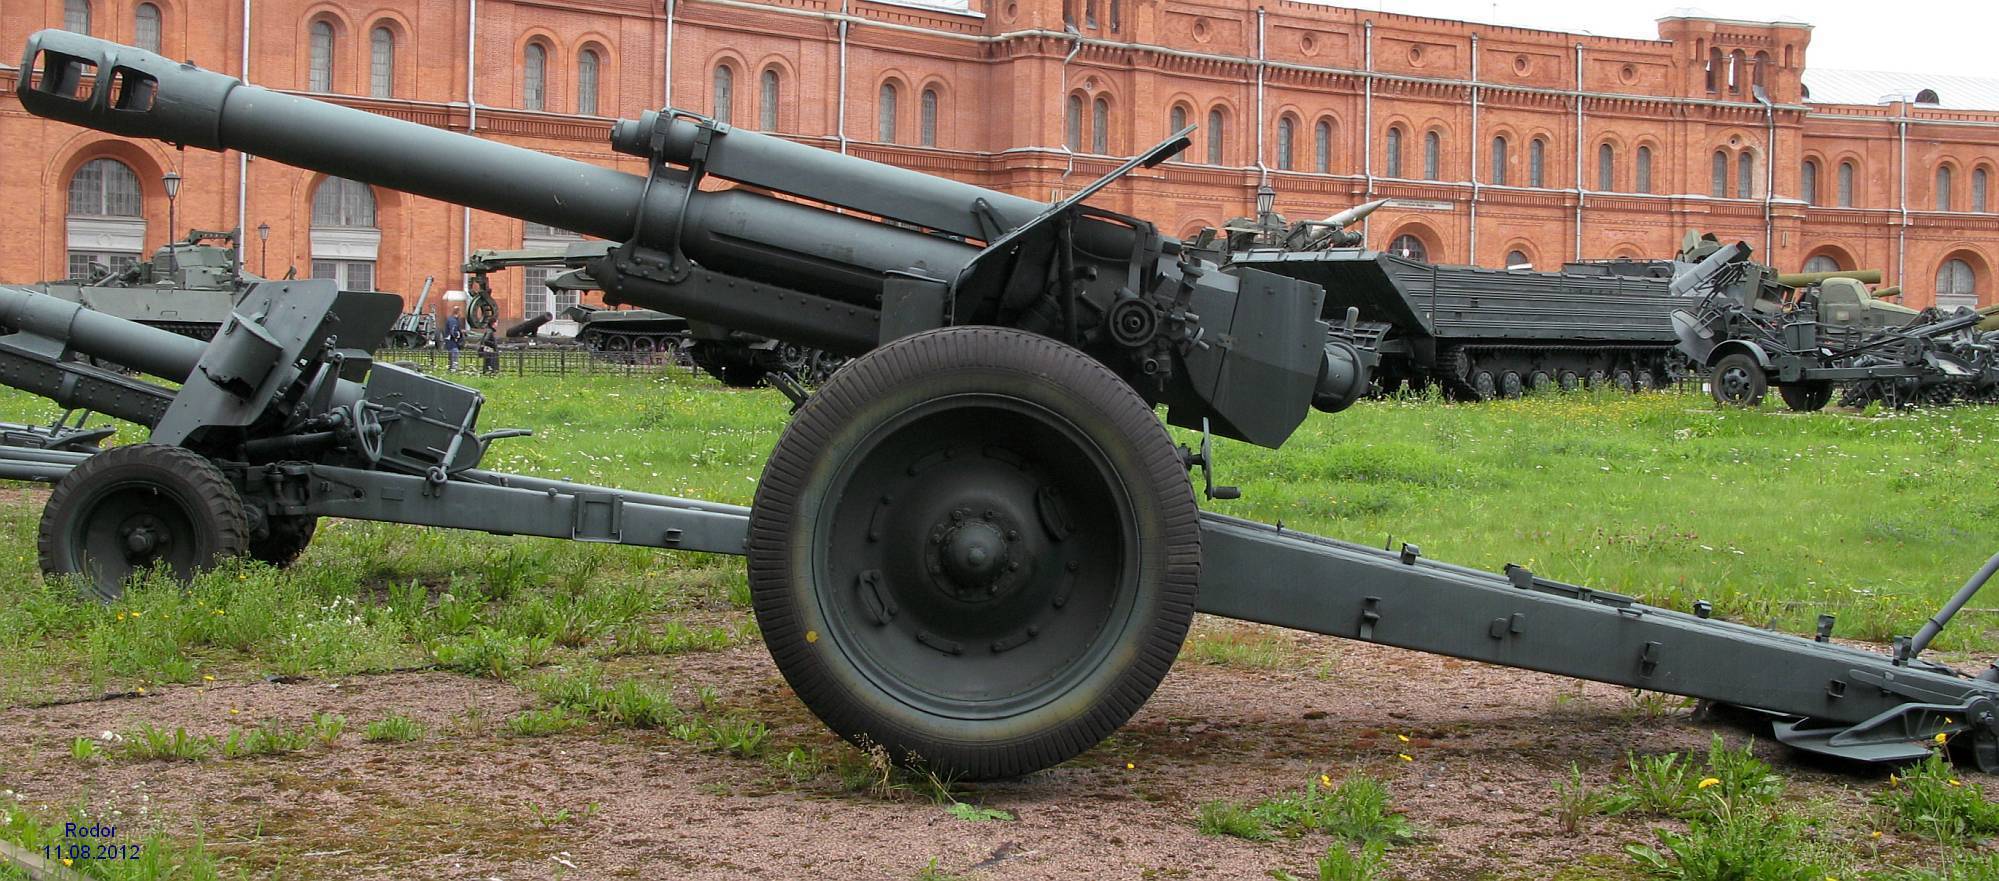 152-мм гаубица образца 1943 года (д-1) — википедия. что такое 152-мм гаубица образца 1943 года (д-1)